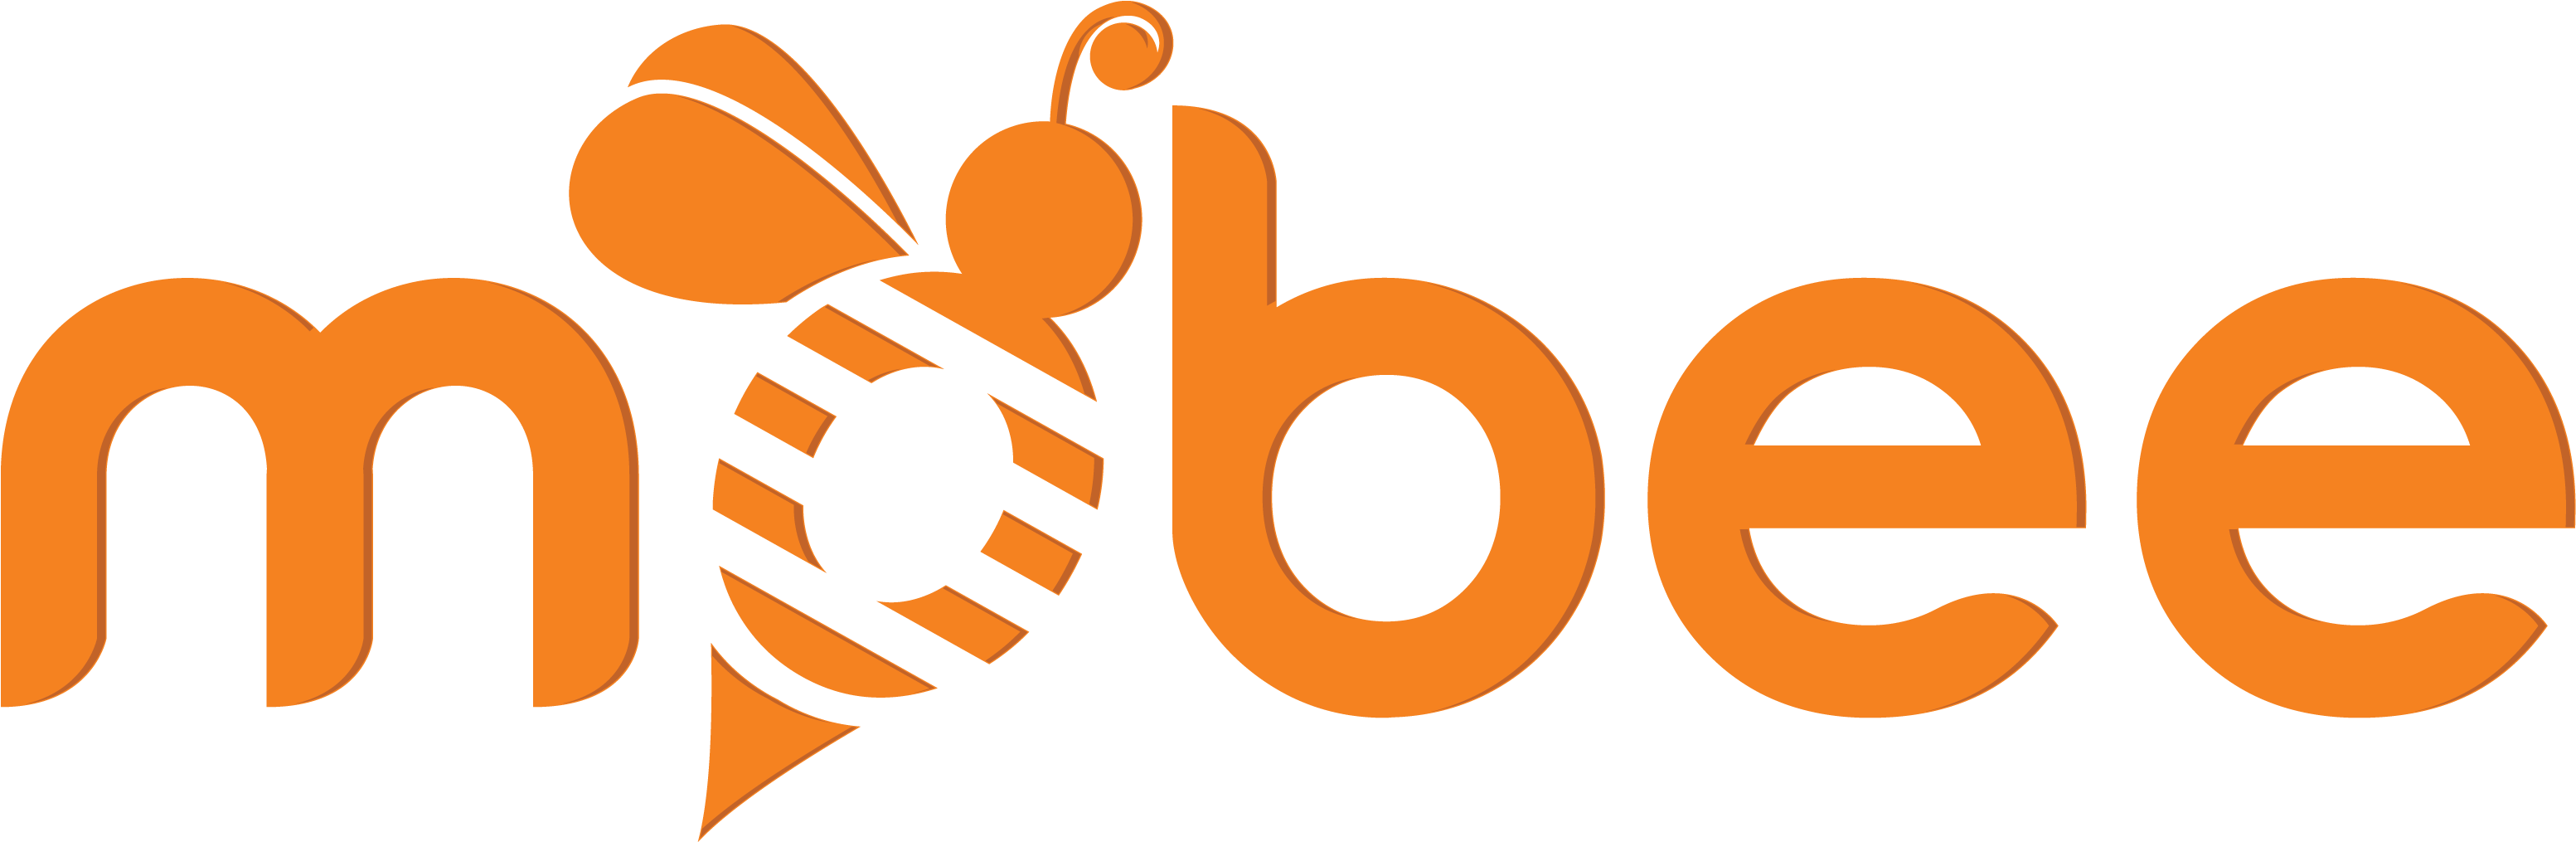 Logo Mobee Hd Orange - Mystery Shopper Mobile App (3116x1021)